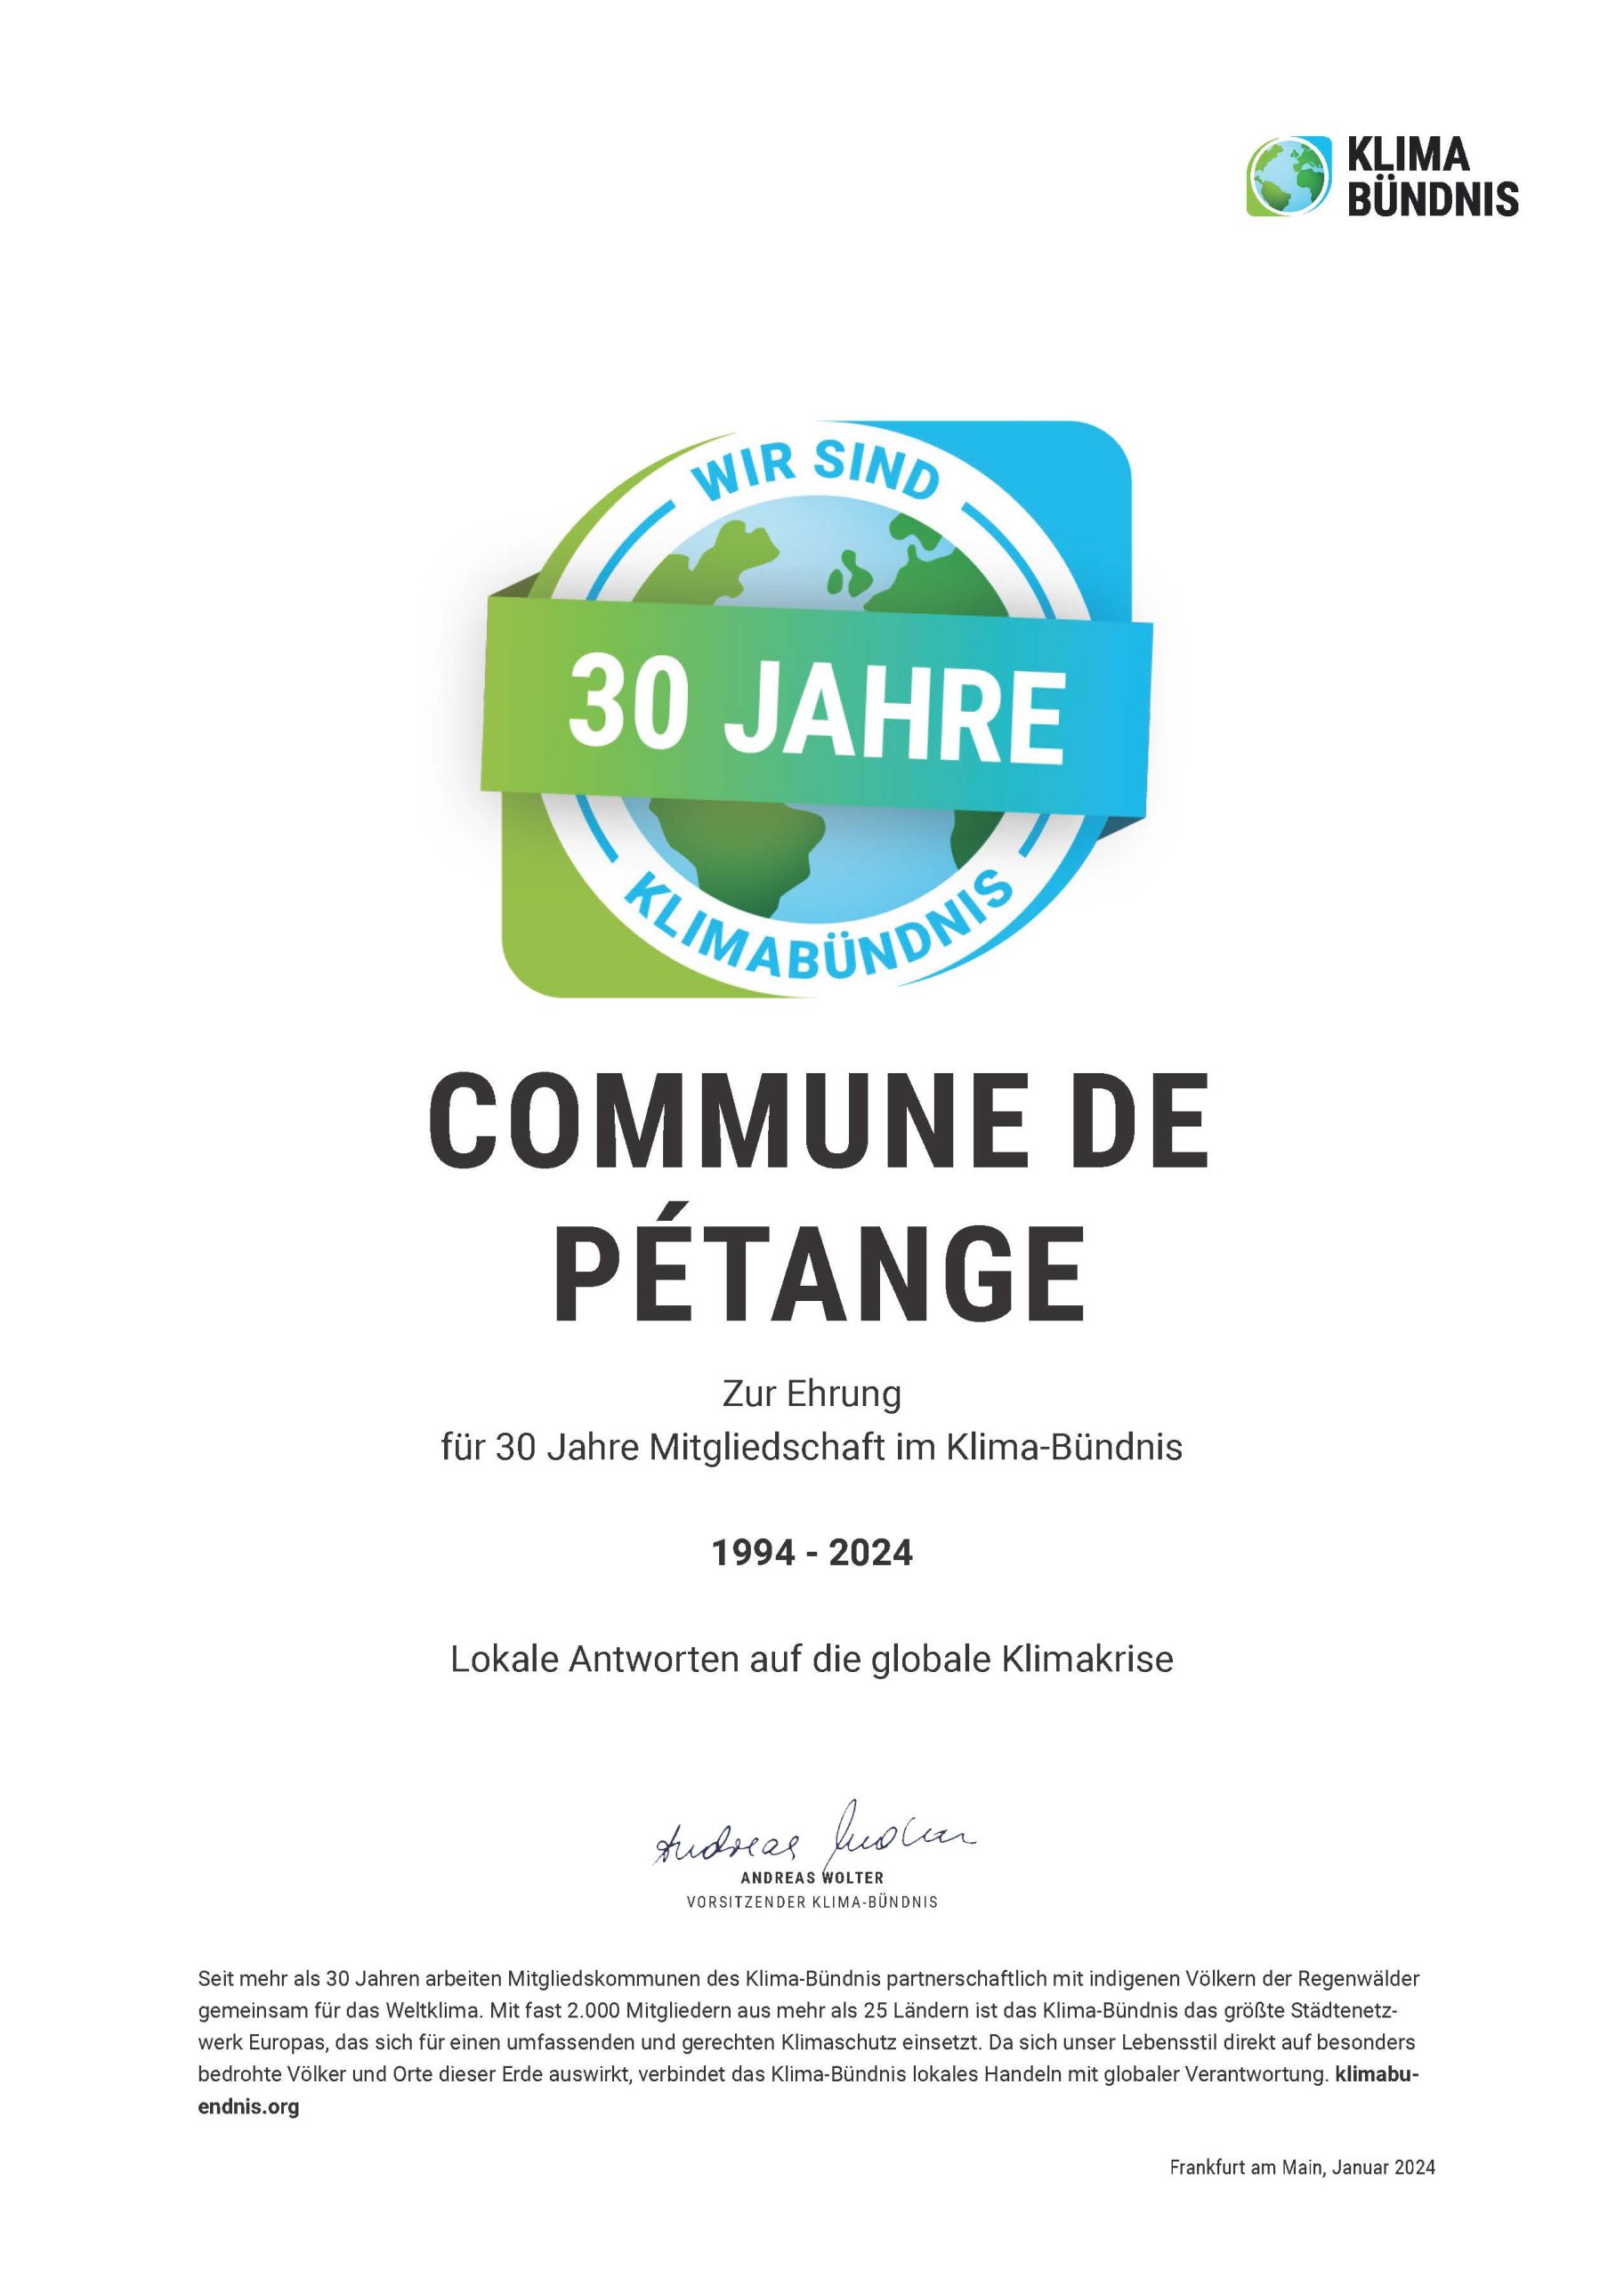 Die Gemeinde Petingen erhält Urkunde für langjähriges Engagement im Klimaschutz